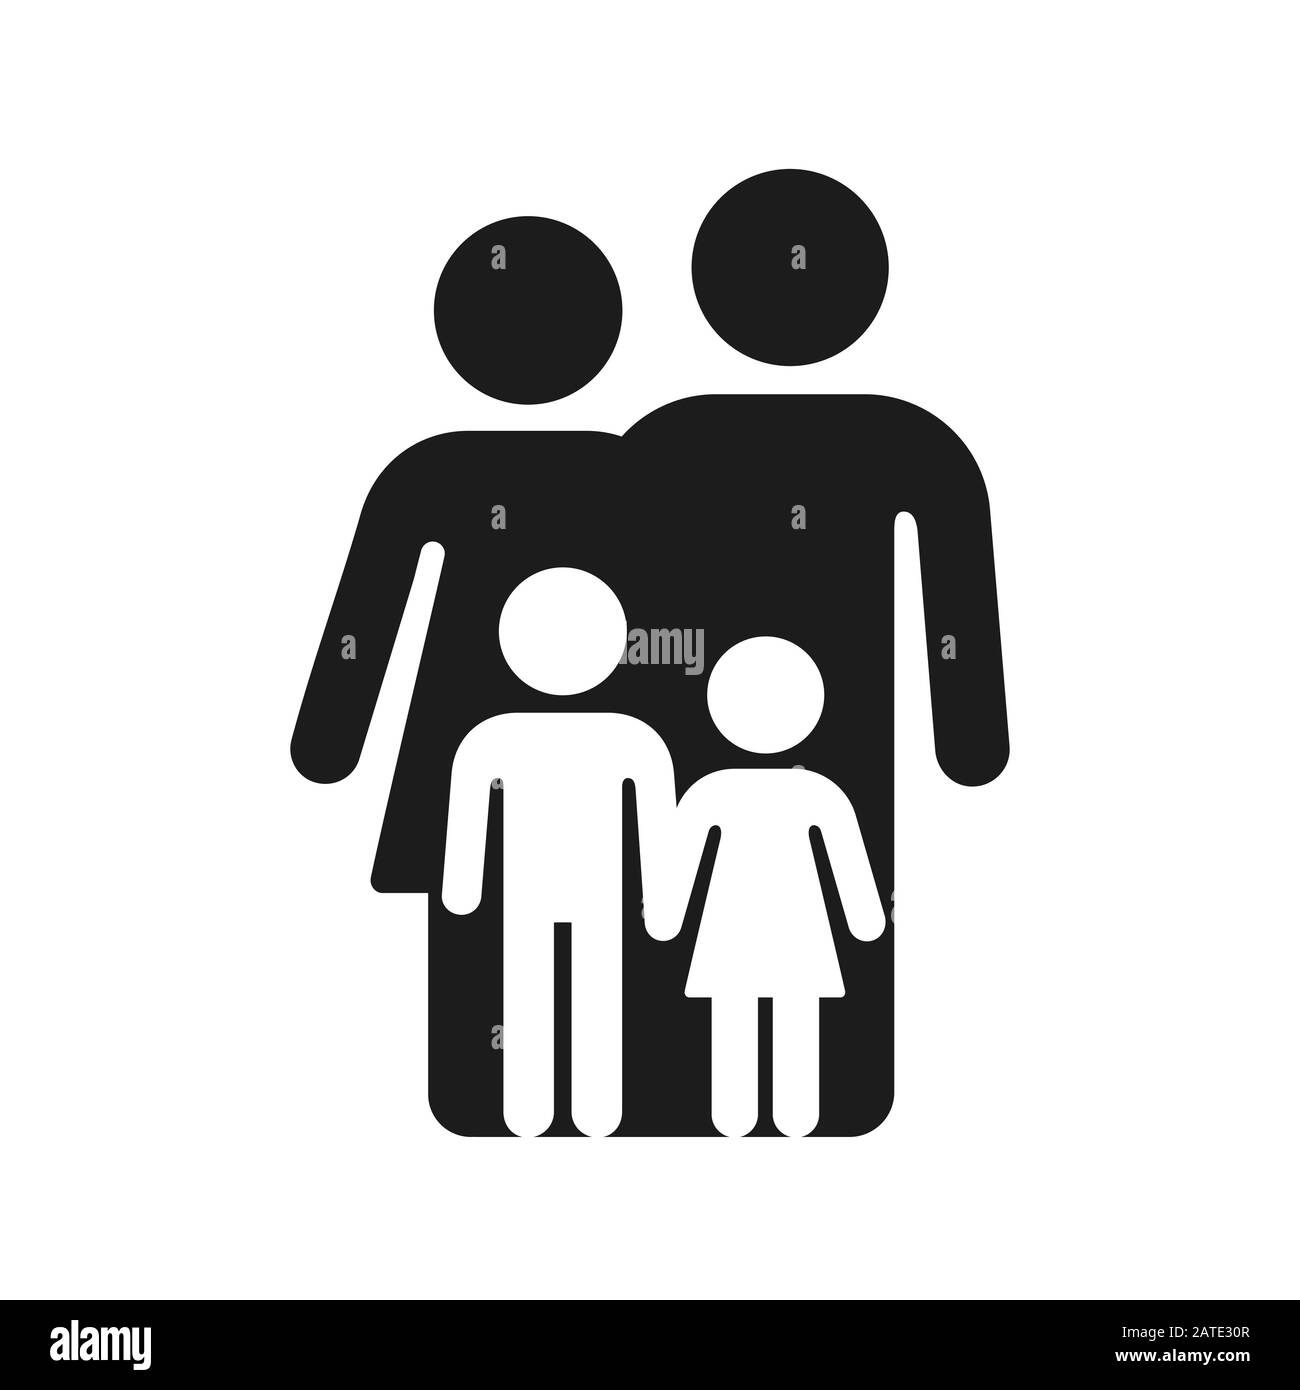 Semplice figura famiglia di madre, padre e due figli. Simbolo o logo geometrico minimo in bianco e nero. Illustrazione dell'icona del vettore isolato. Illustrazione Vettoriale